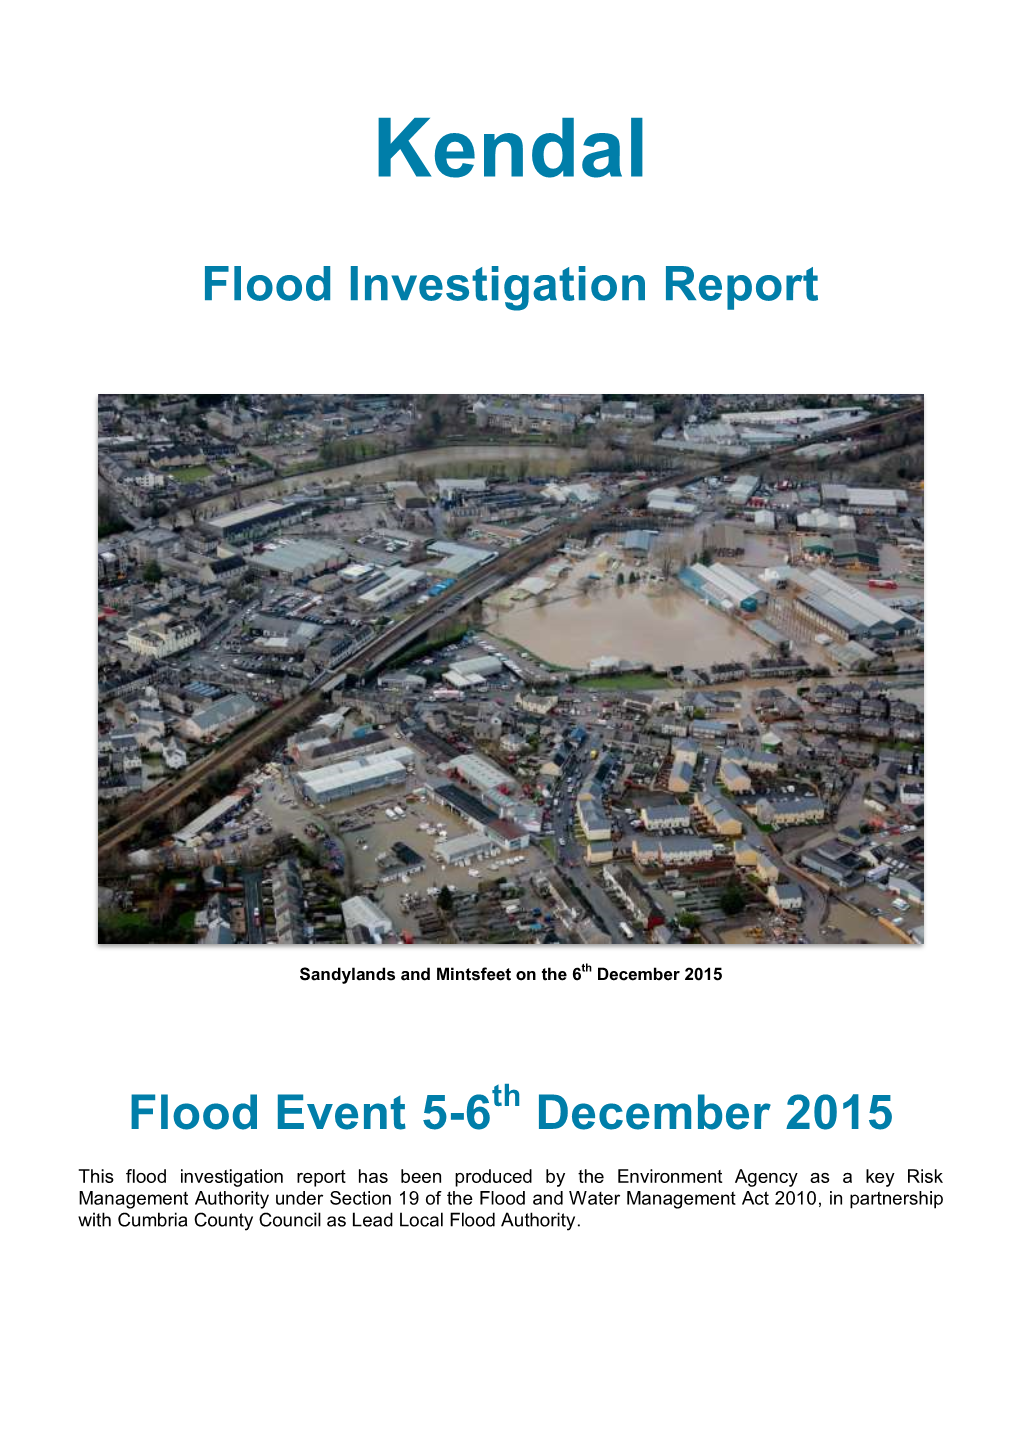 Kendal Flood Investigation Report V3.0 FINAL